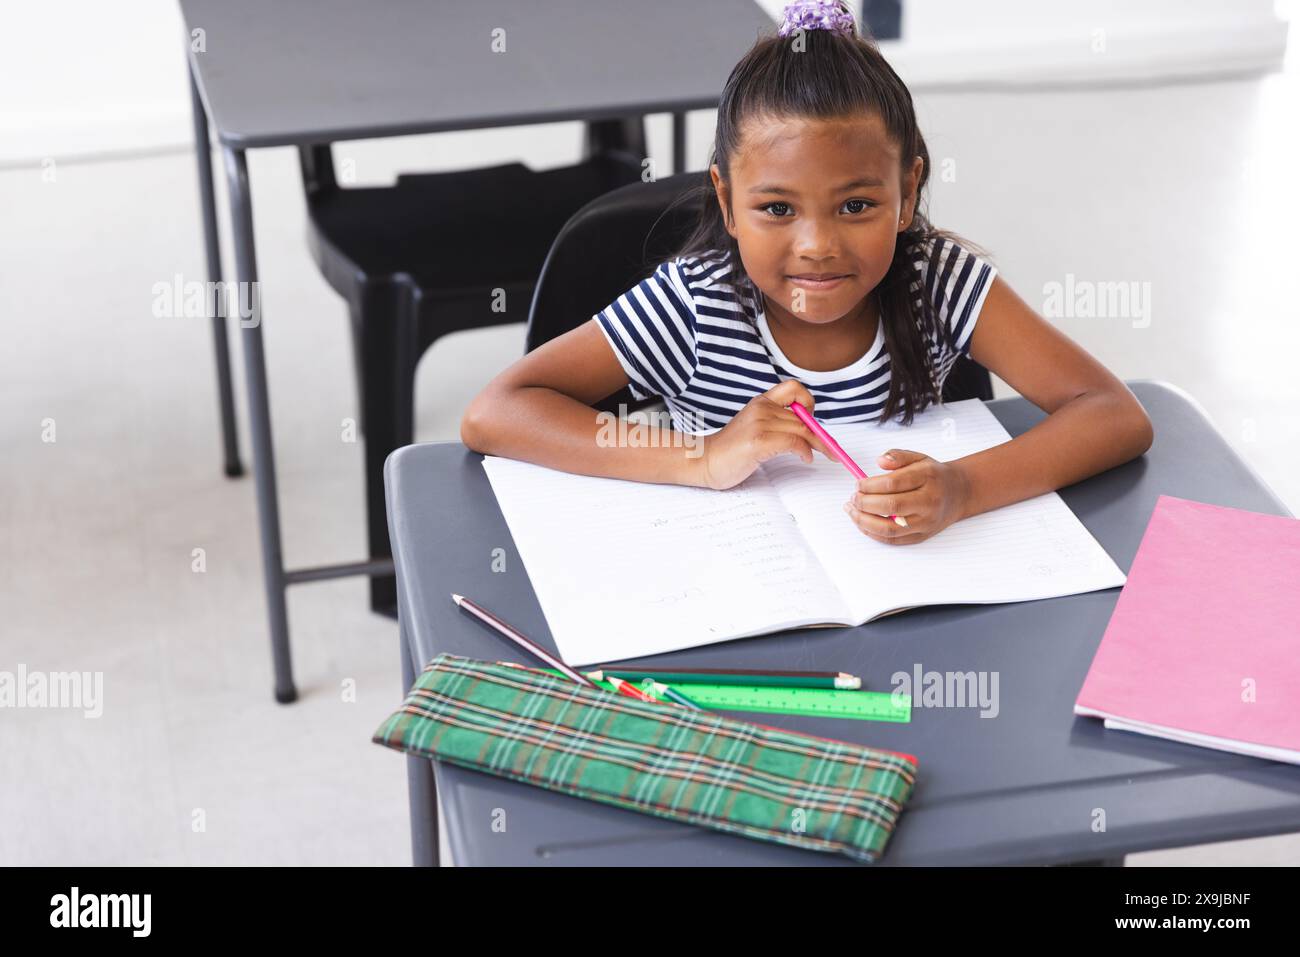 À l'école, jeune fille biraciale assise à un bureau écrivant en classe Banque D'Images